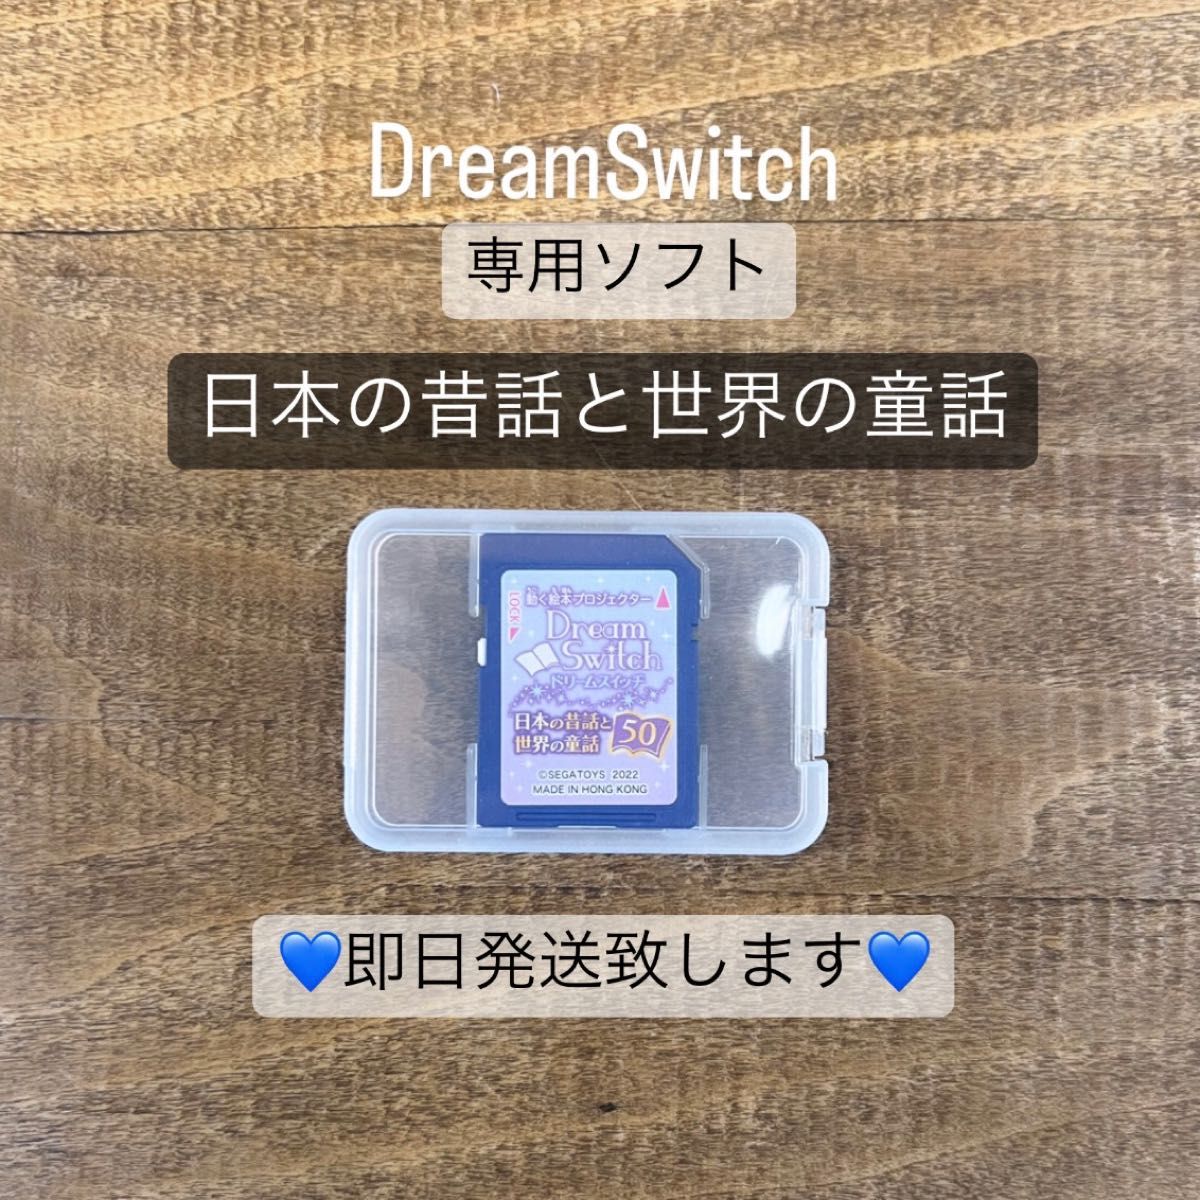 ドリームスイッチ 専用ソフト 日本の昔話と世界の童話 50 SDカード